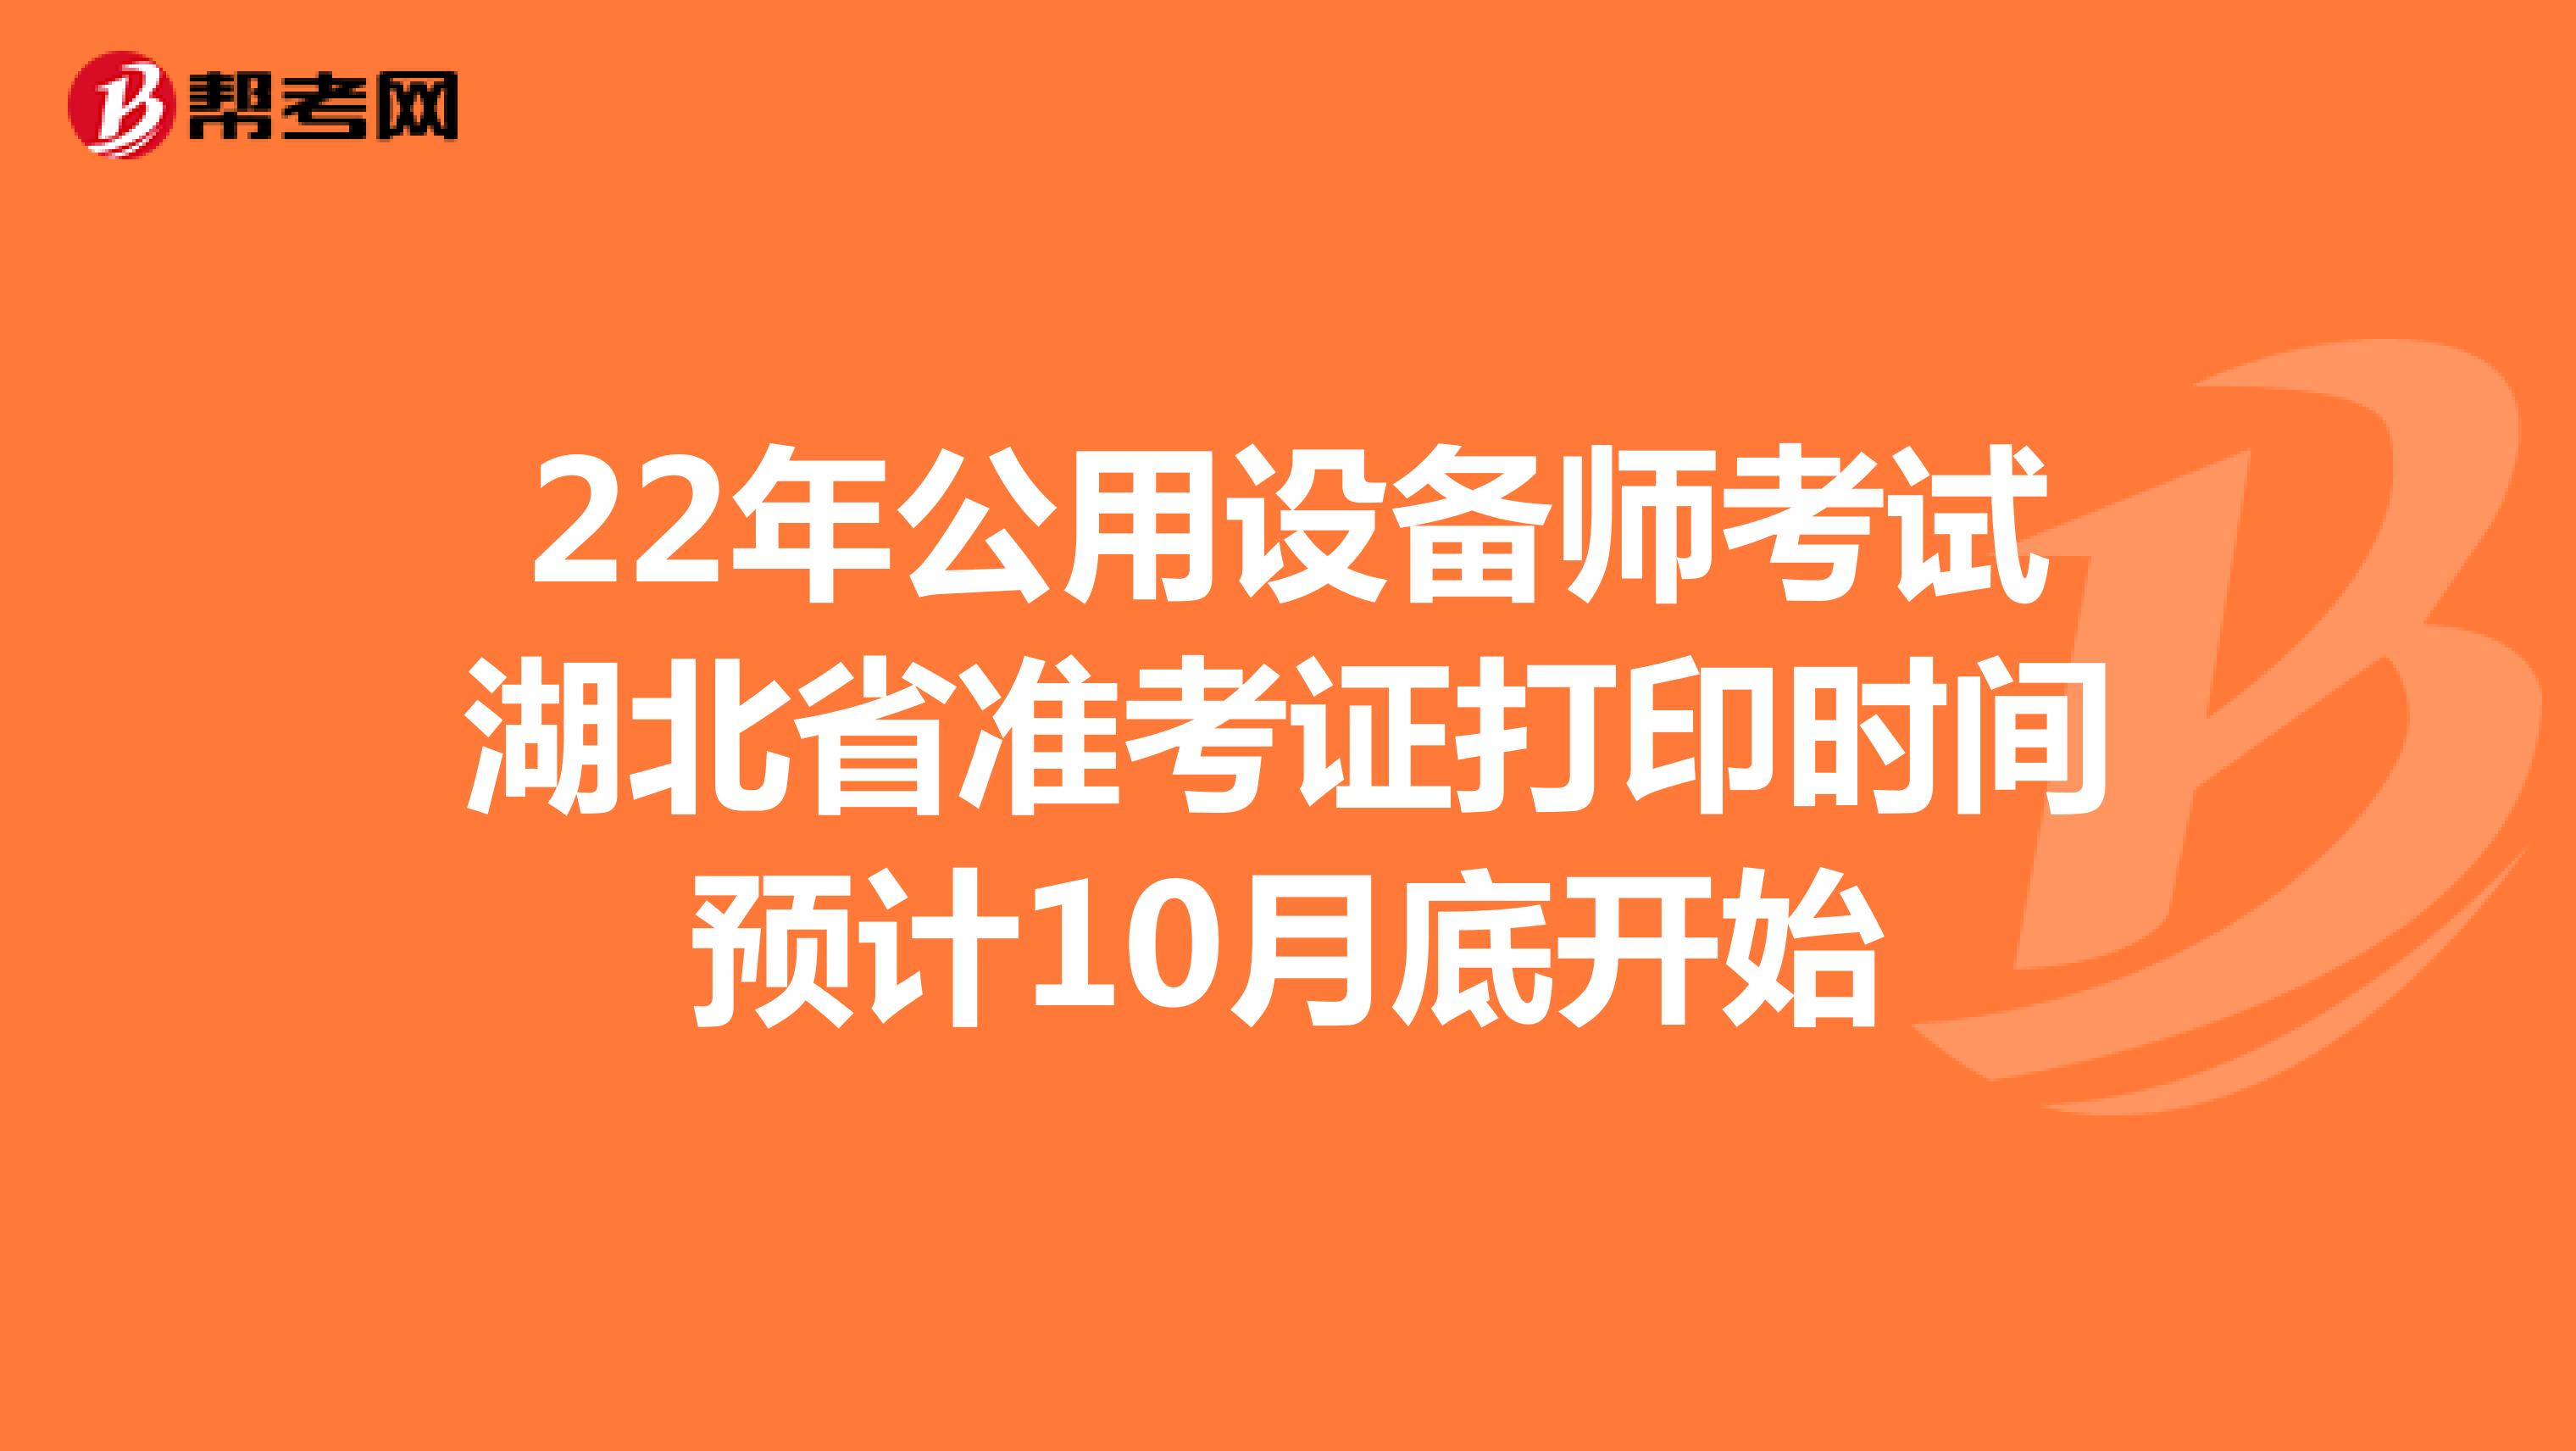 22年公用设备师考试湖北省准考证打印时间预计10月底开始